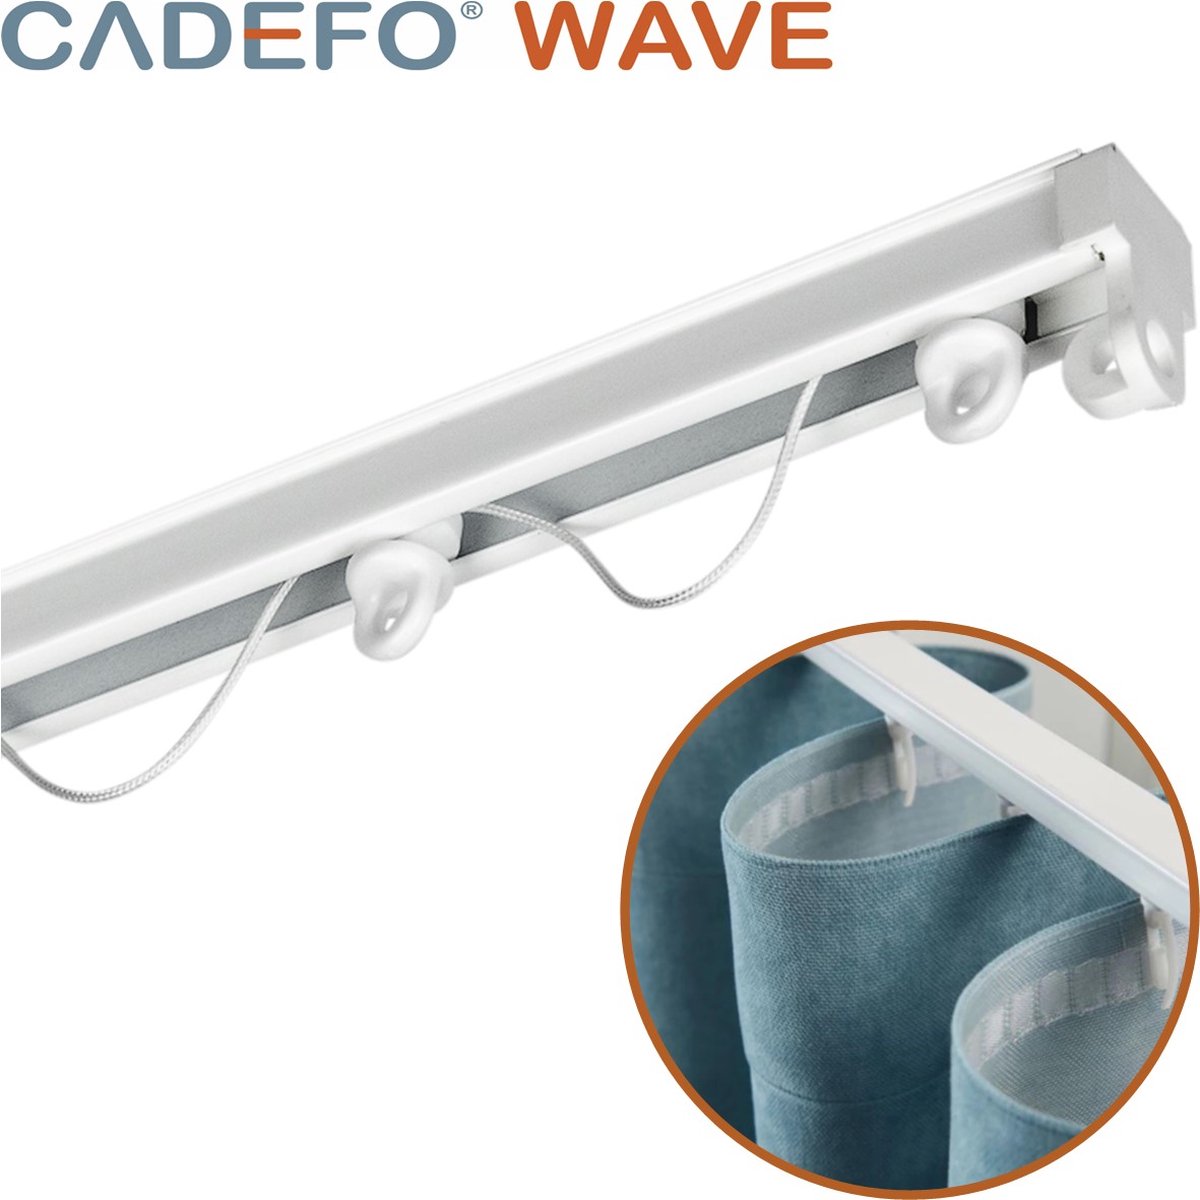 CADEFO WAVE (151 - 200 cm) Gordijnrails - Compleet op maat! - UIT 1 STUK - Leverbaar tot 6 meter - Plafondbevestiging - Lengte 186 cm